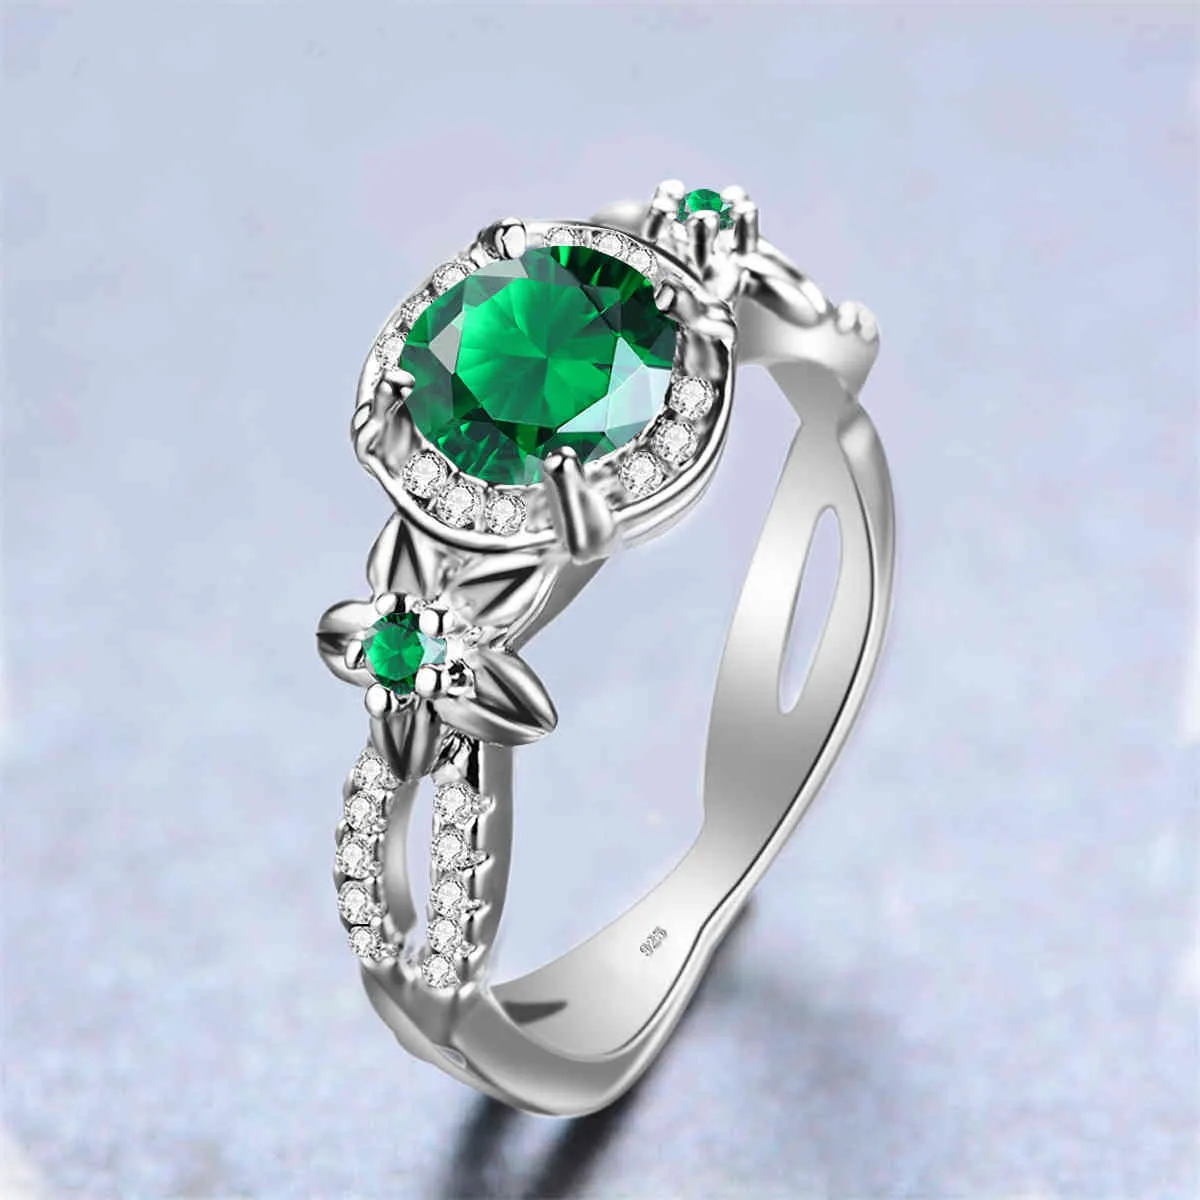 Szjinao anneaux pour femmes véritable 925 bague en argent Sterling émeraude avec diamants fleurs exquises Boho graver bijoux fins